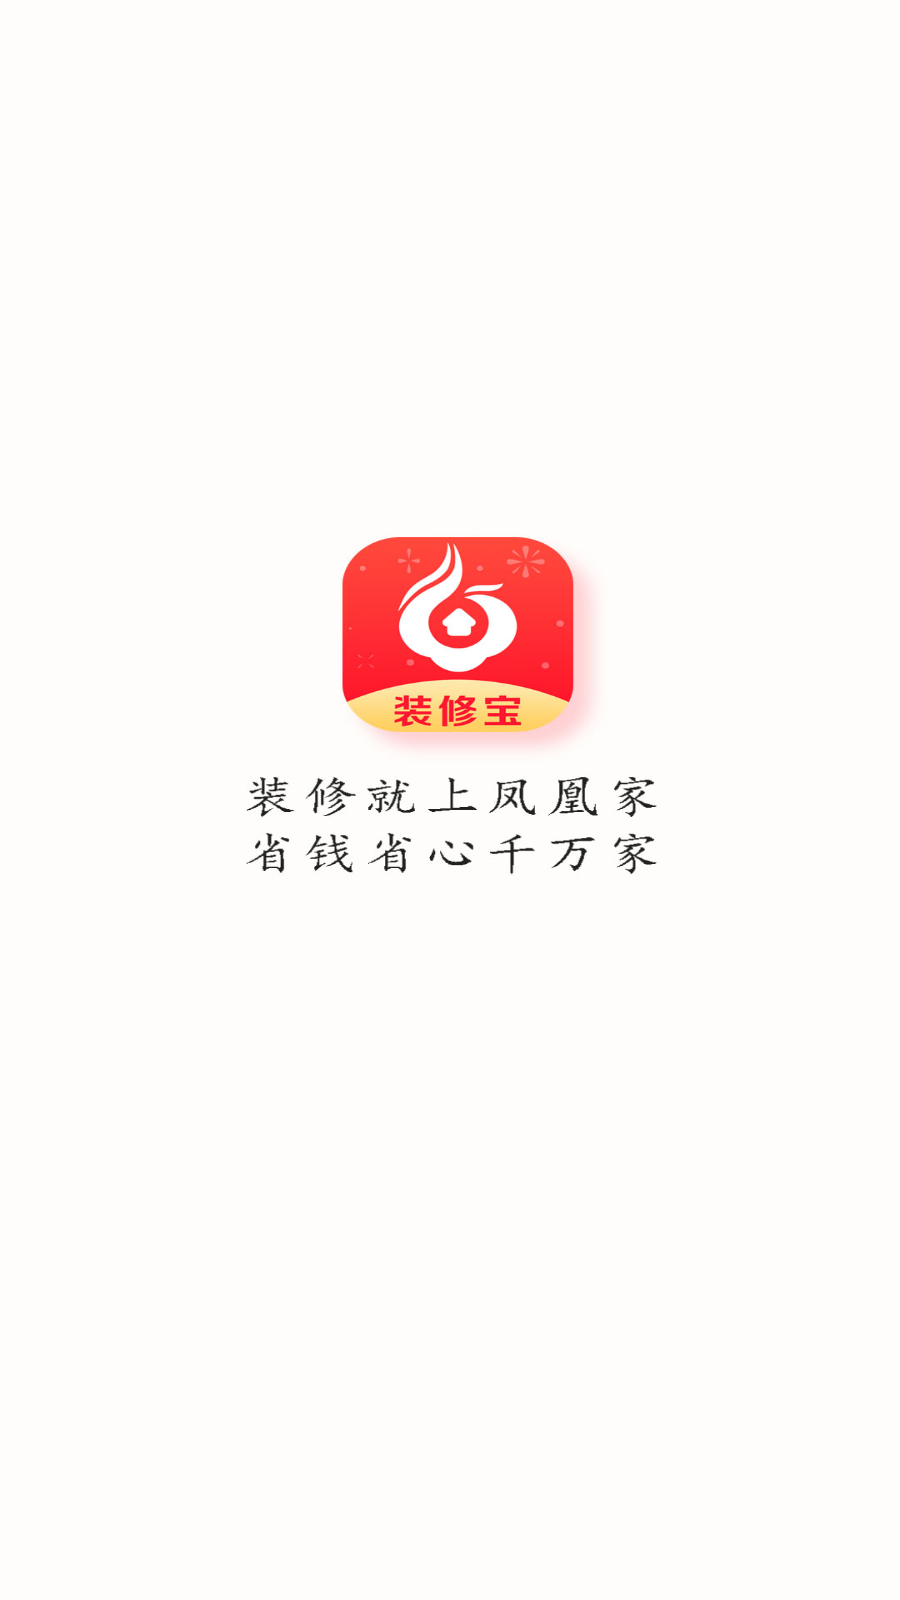 凤凰家装修宝平台app1.3.1